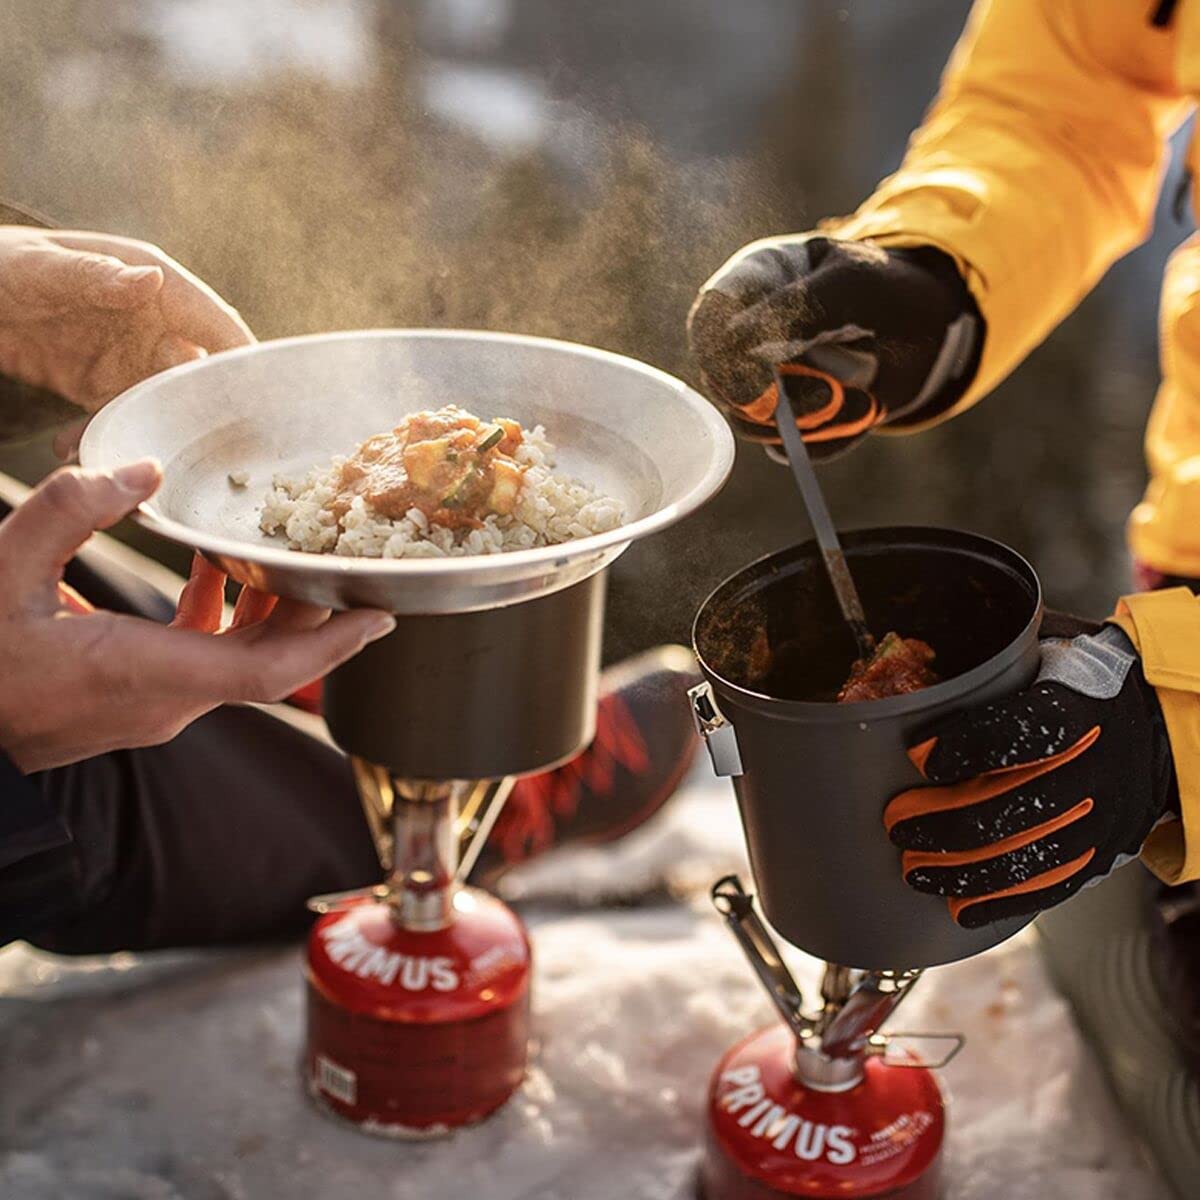 Primus Trek Pot Set Lightweight Camping & Hiking Cookware